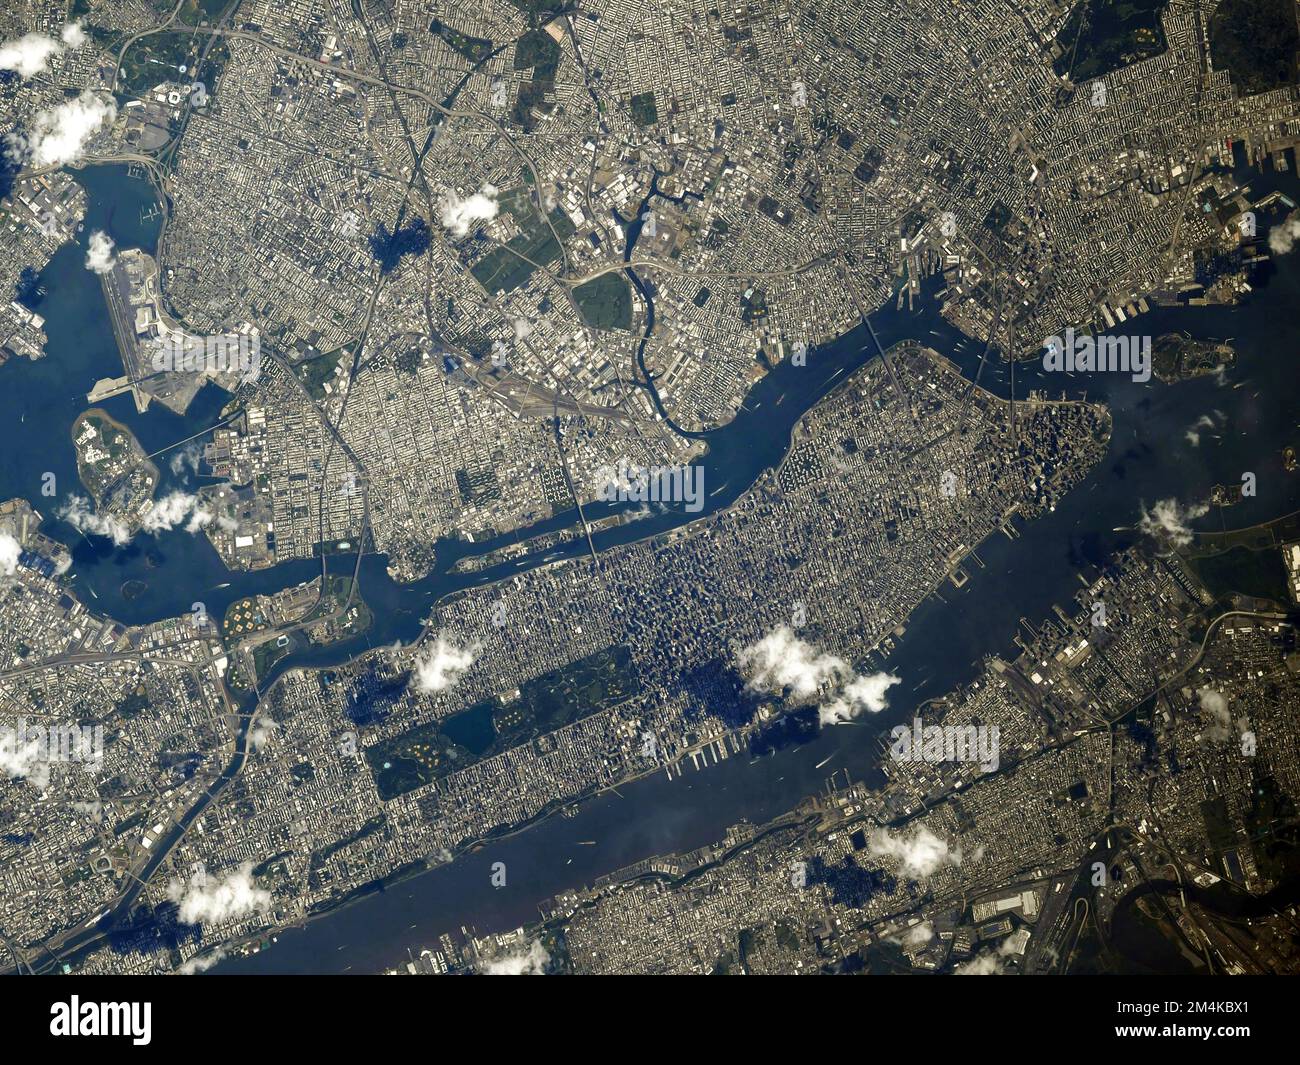 Vue aérienne de l'espace par la station spatiale internationale de Manhattan, New York, le 09/11/19,18 ans après l'attaque. Amélioration numérique. Image de la NASA Banque D'Images